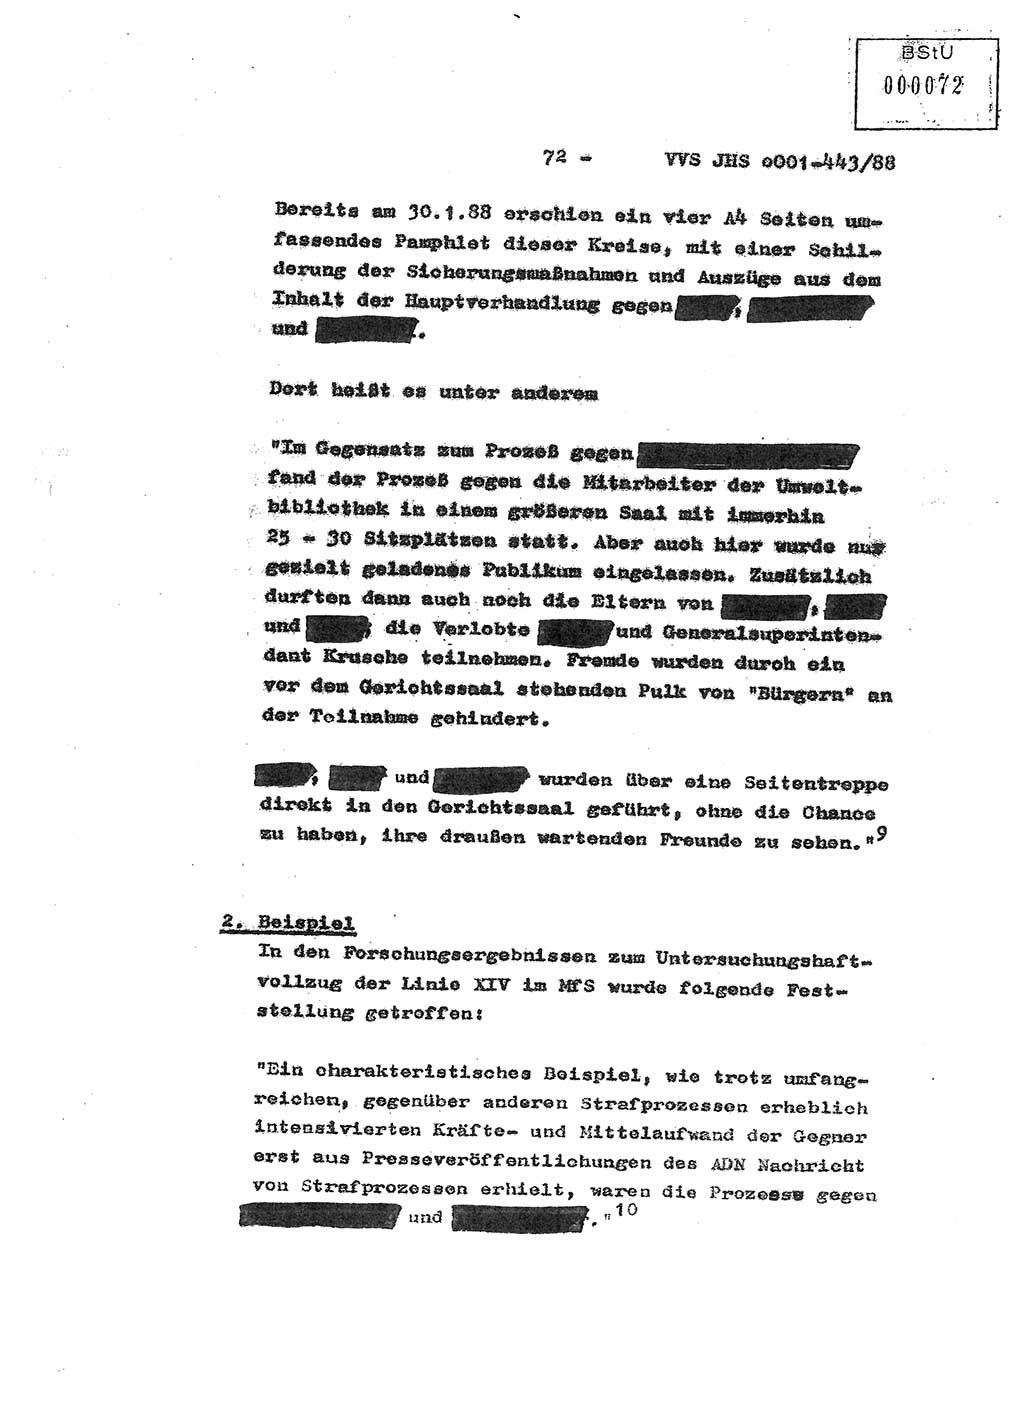 Diplomarbeit Hauptmann Michael Rast (Abt. ⅩⅣ), Major Bernd Rahaus (Abt. ⅩⅣ), Ministerium für Staatssicherheit (MfS) [Deutsche Demokratische Republik (DDR)], Juristische Hochschule (JHS), Vertrauliche Verschlußsache (VVS) o001-443/88, Potsdam 1988, Seite 72 (Dipl.-Arb. MfS DDR JHS VVS o001-443/88 1988, S. 72)